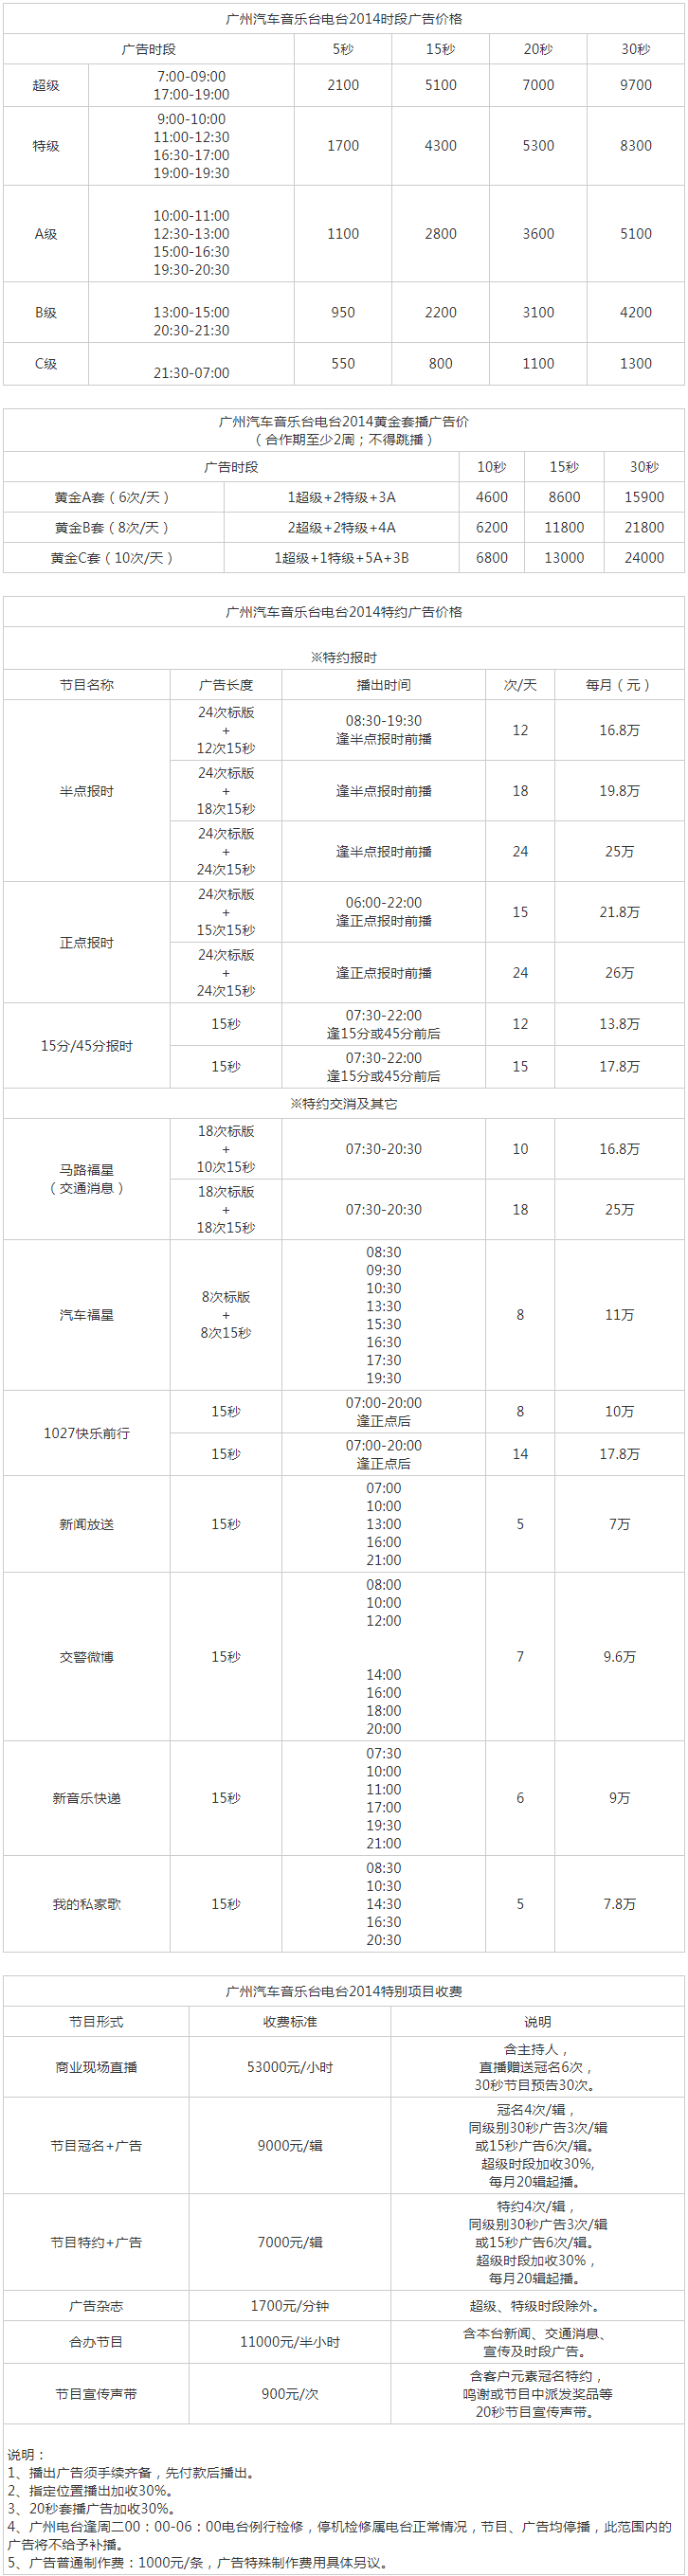 2014广州人民广播电台金曲广播102.7广告报价表.png